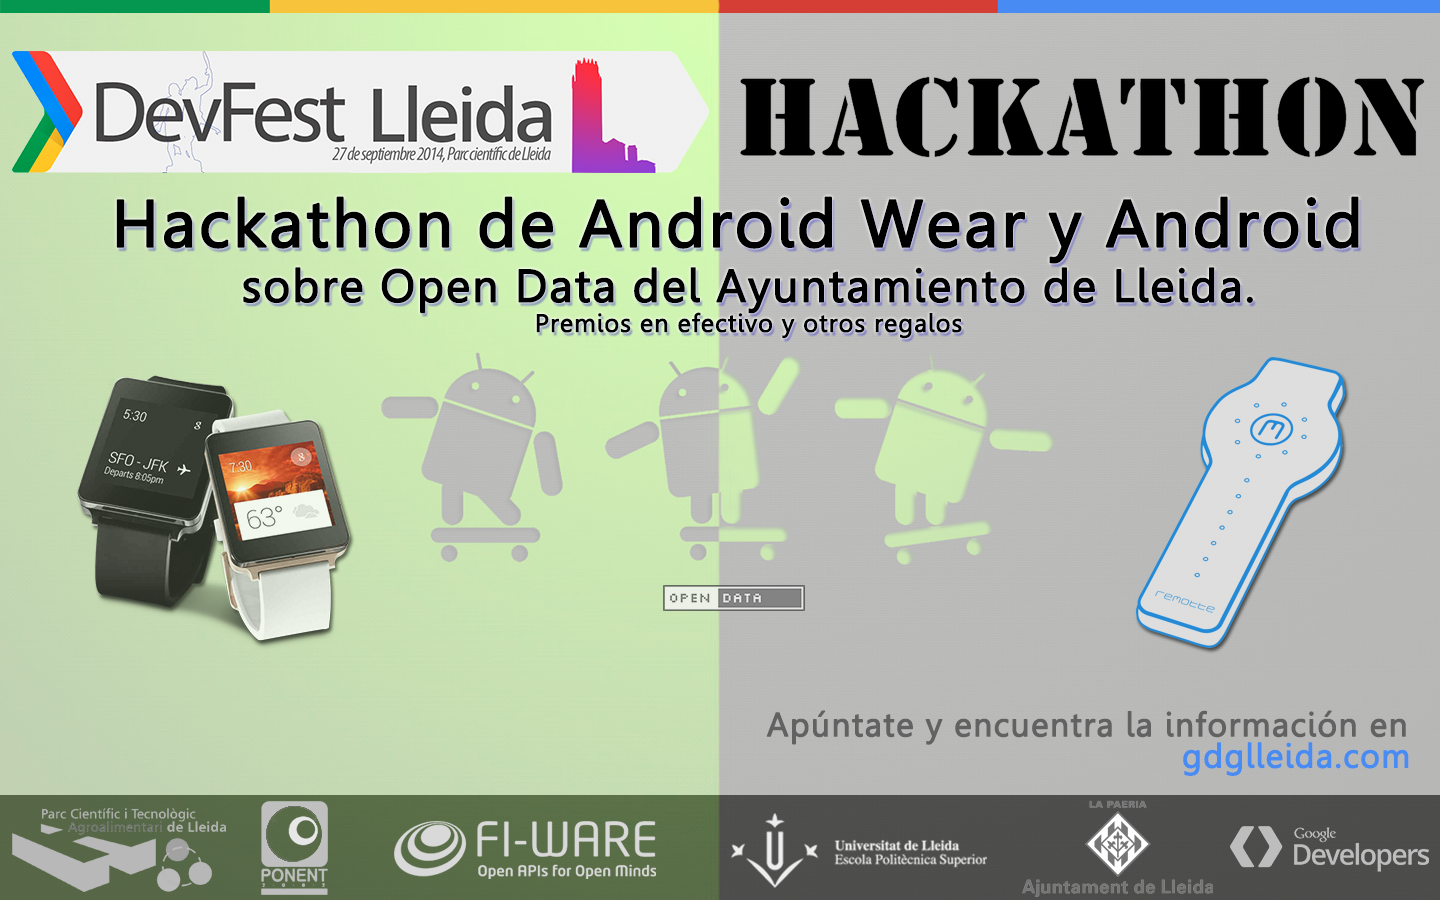 #Hackathon #Android #Wear y #OpenData con @FIWARE en el Devfest #Lleida 2014